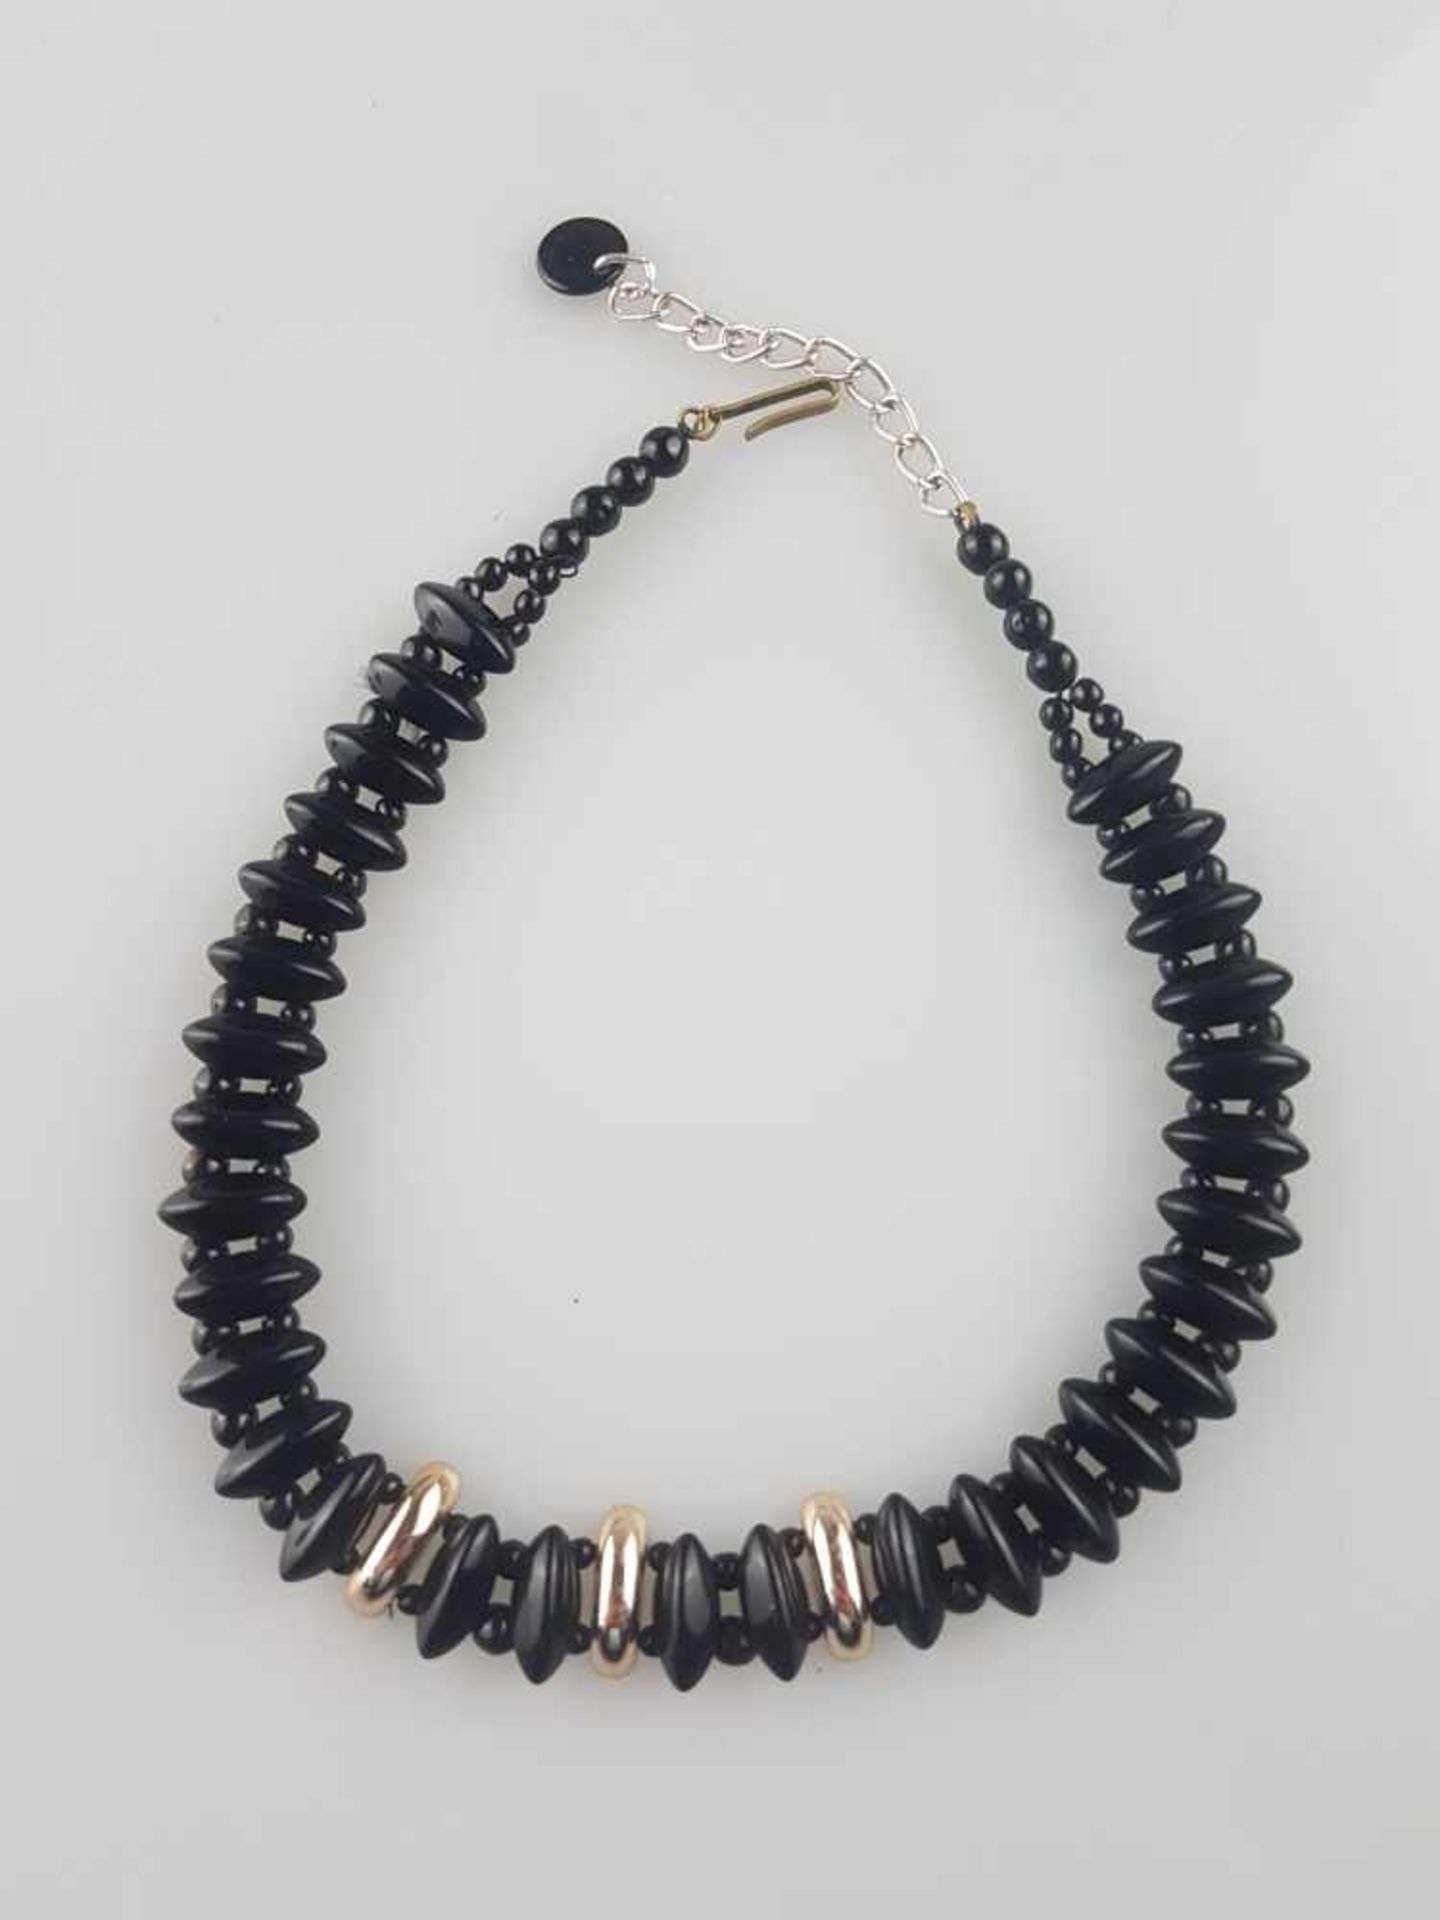 Halskette - schwarzer Onyx mit silberfarbenen Zwischenelementen ,Metallverschluss mit